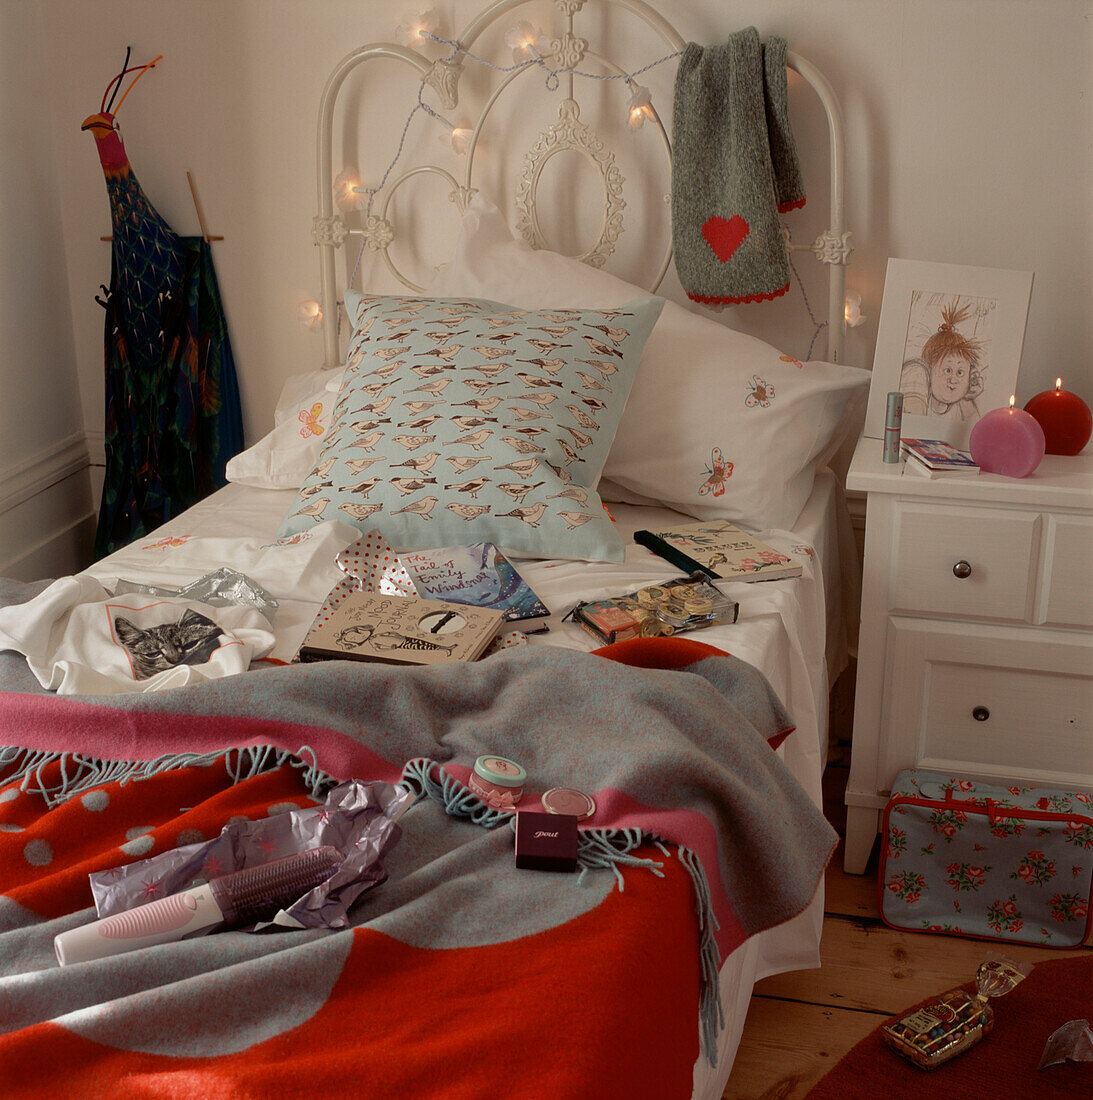 Jugendzimmer voller geöffneter Geschenke, die auf dem Bett ausgestellt sind